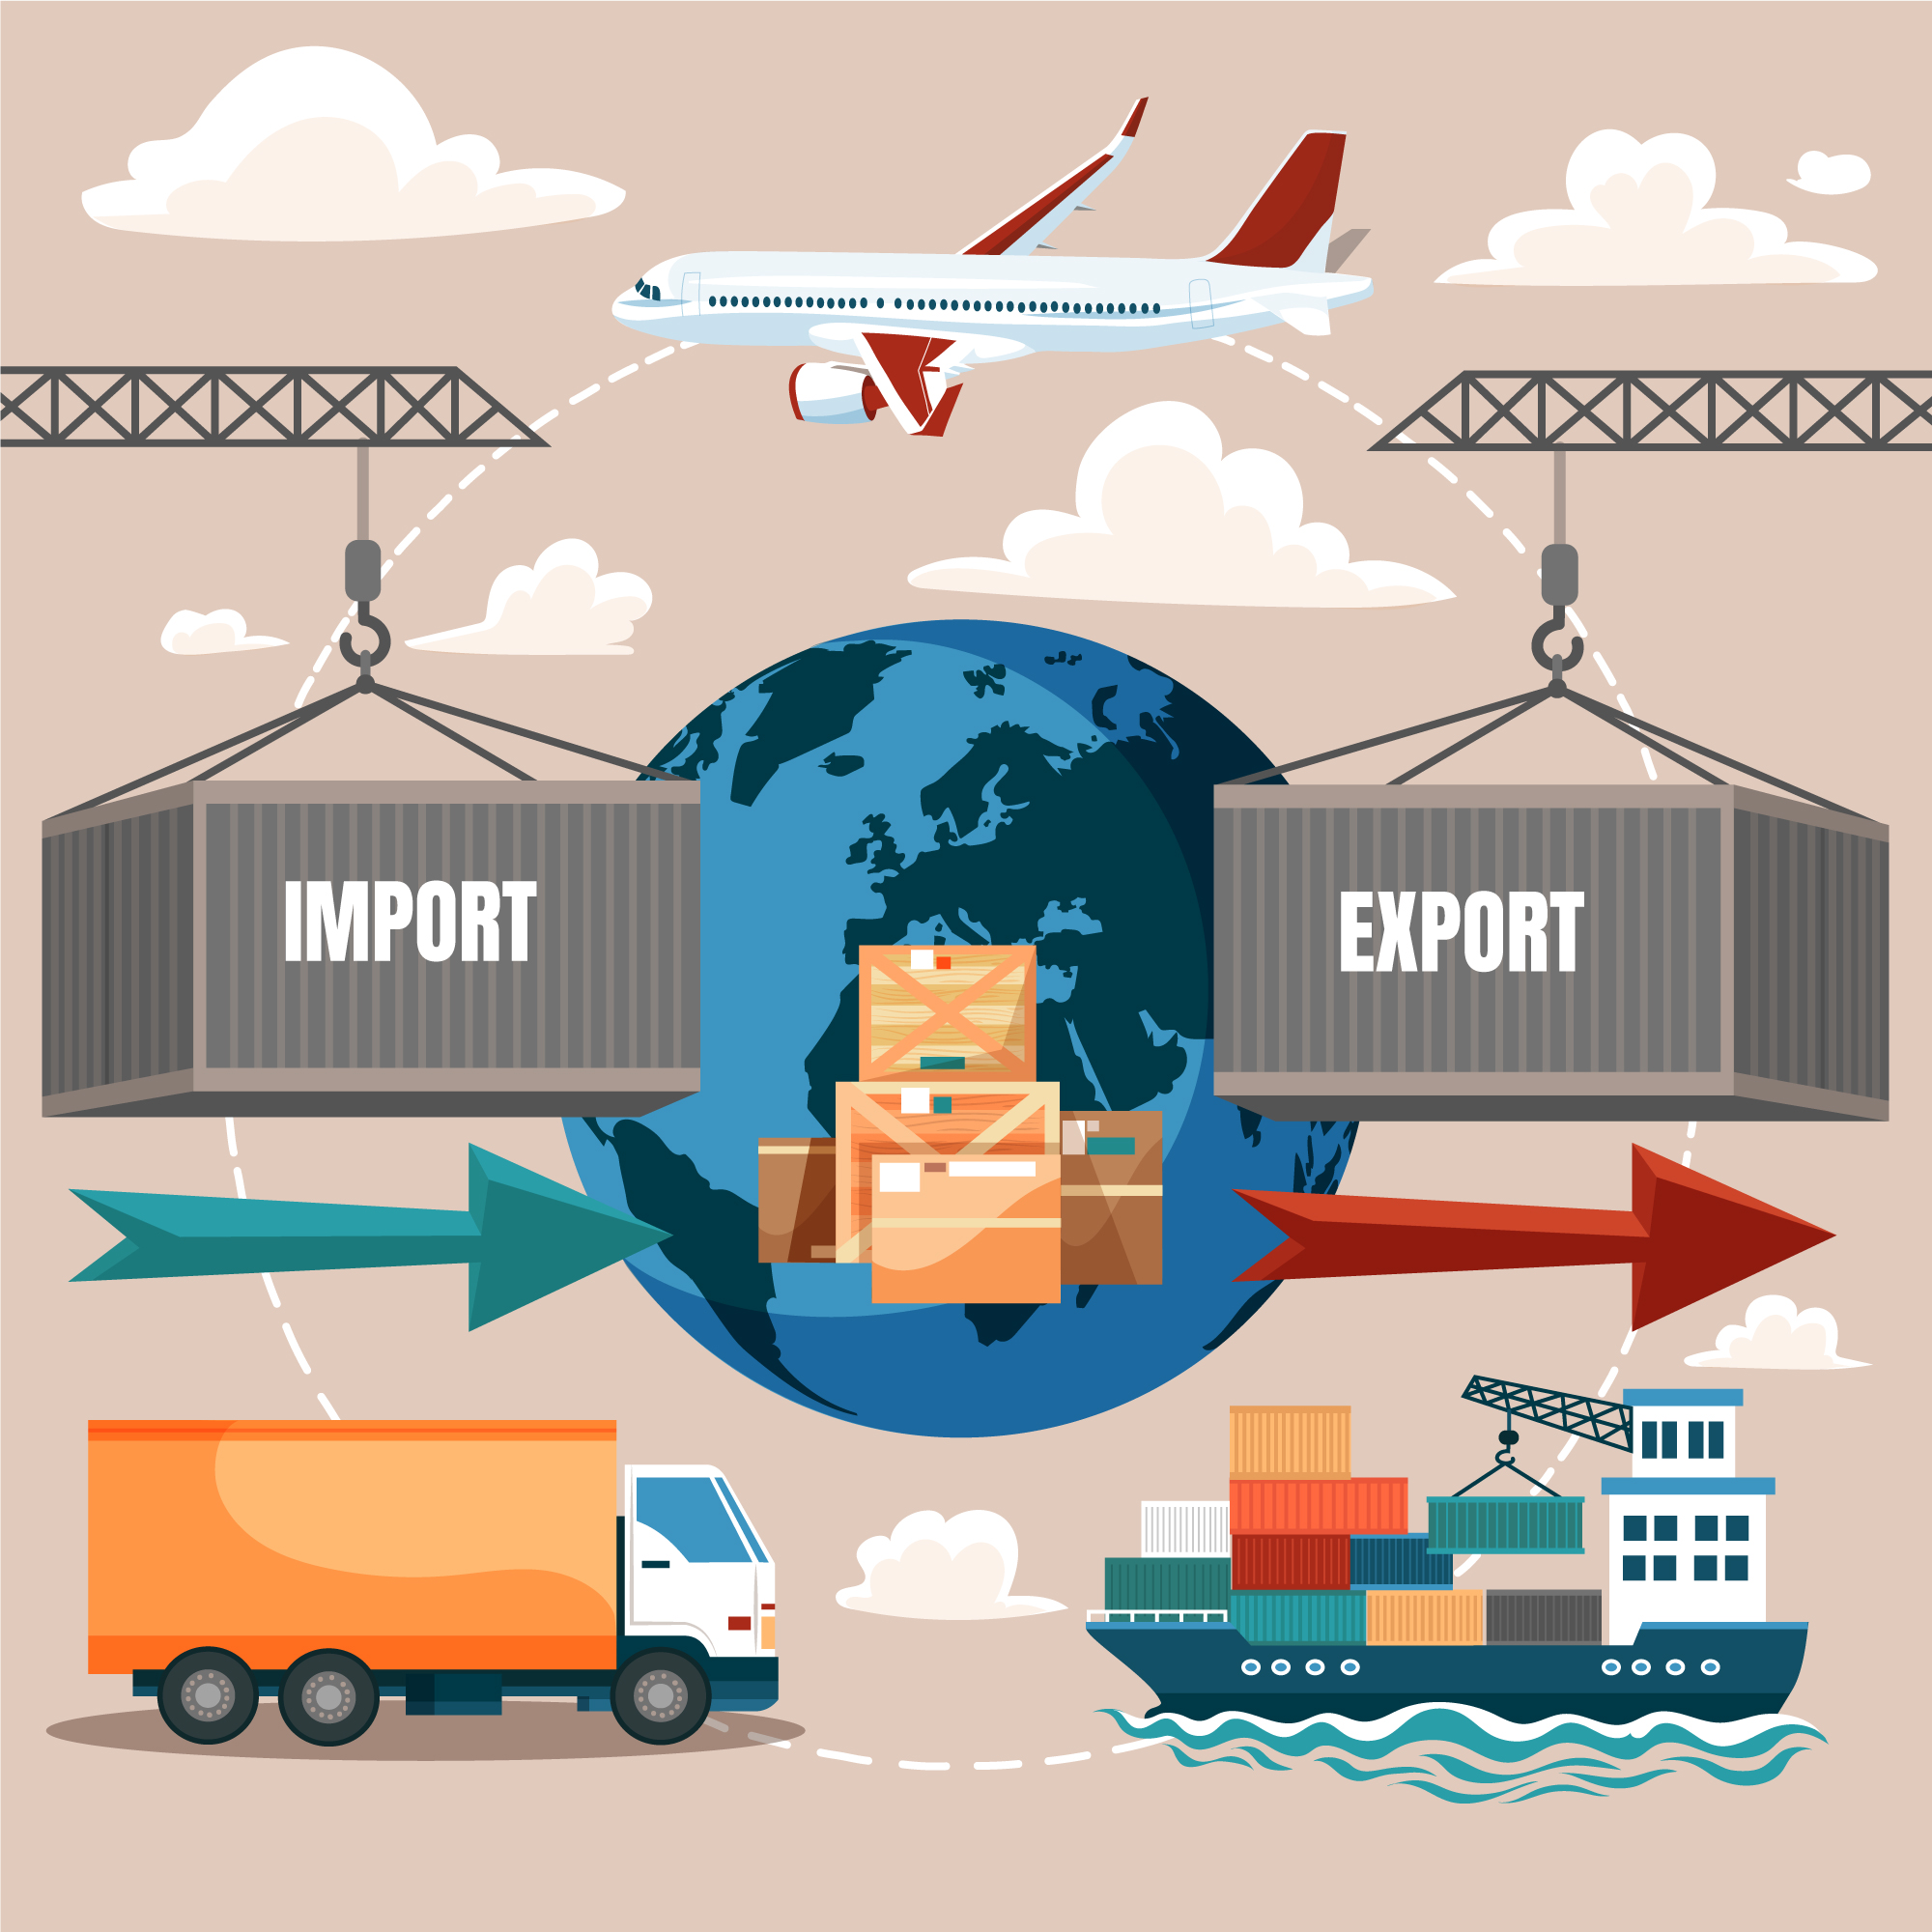 Hàng hóa xuất nhập khẩu được vận chuyển bằng nhiều phương tiện khác nhau. 